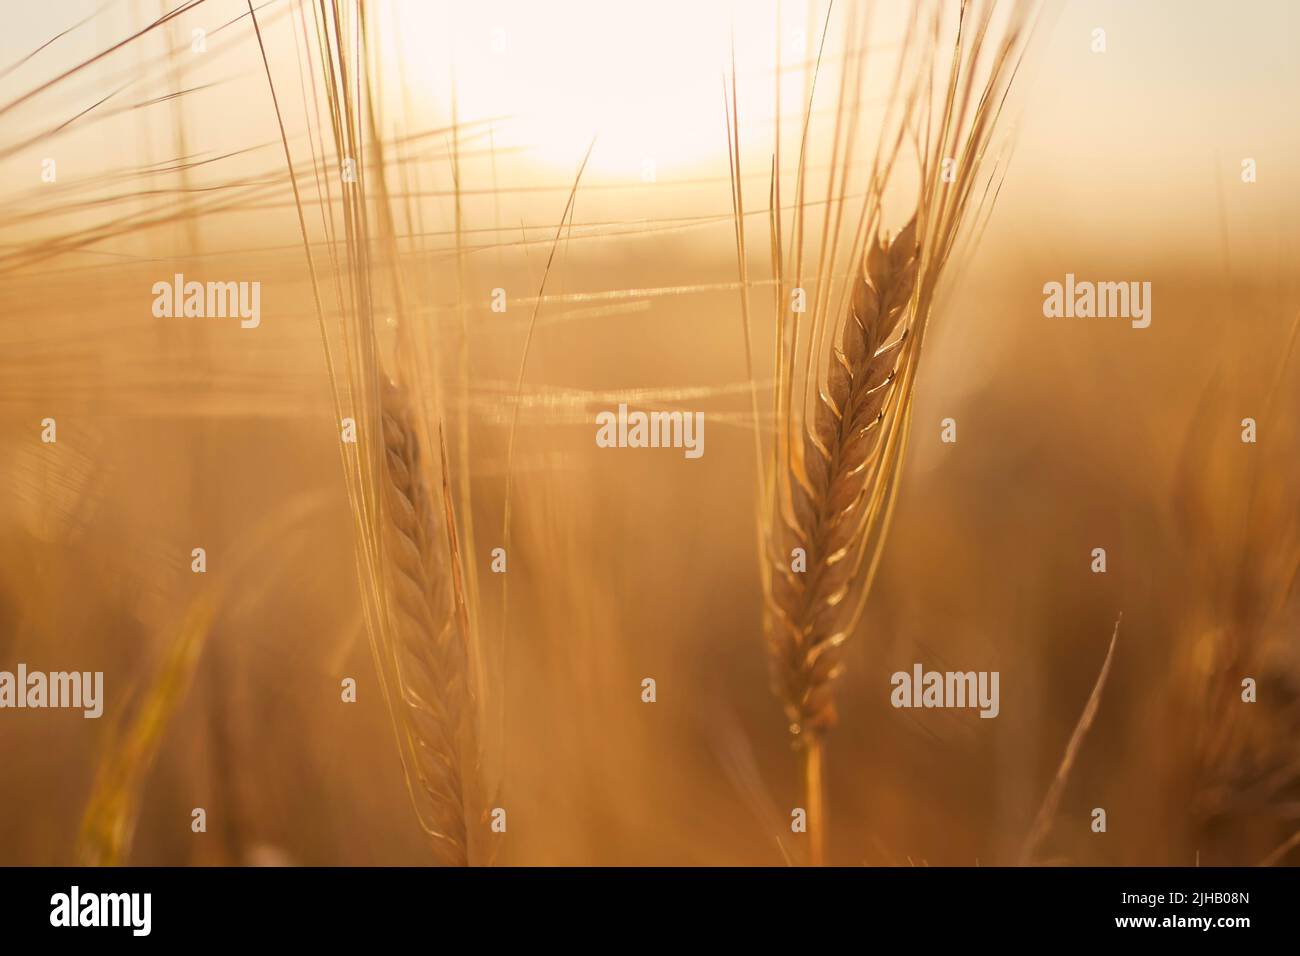 Nahaufnahme von Gerste. Getreidepflanze auf landwirtschaftlichem Feld bei goldenem Sonnenuntergang. Stockfoto